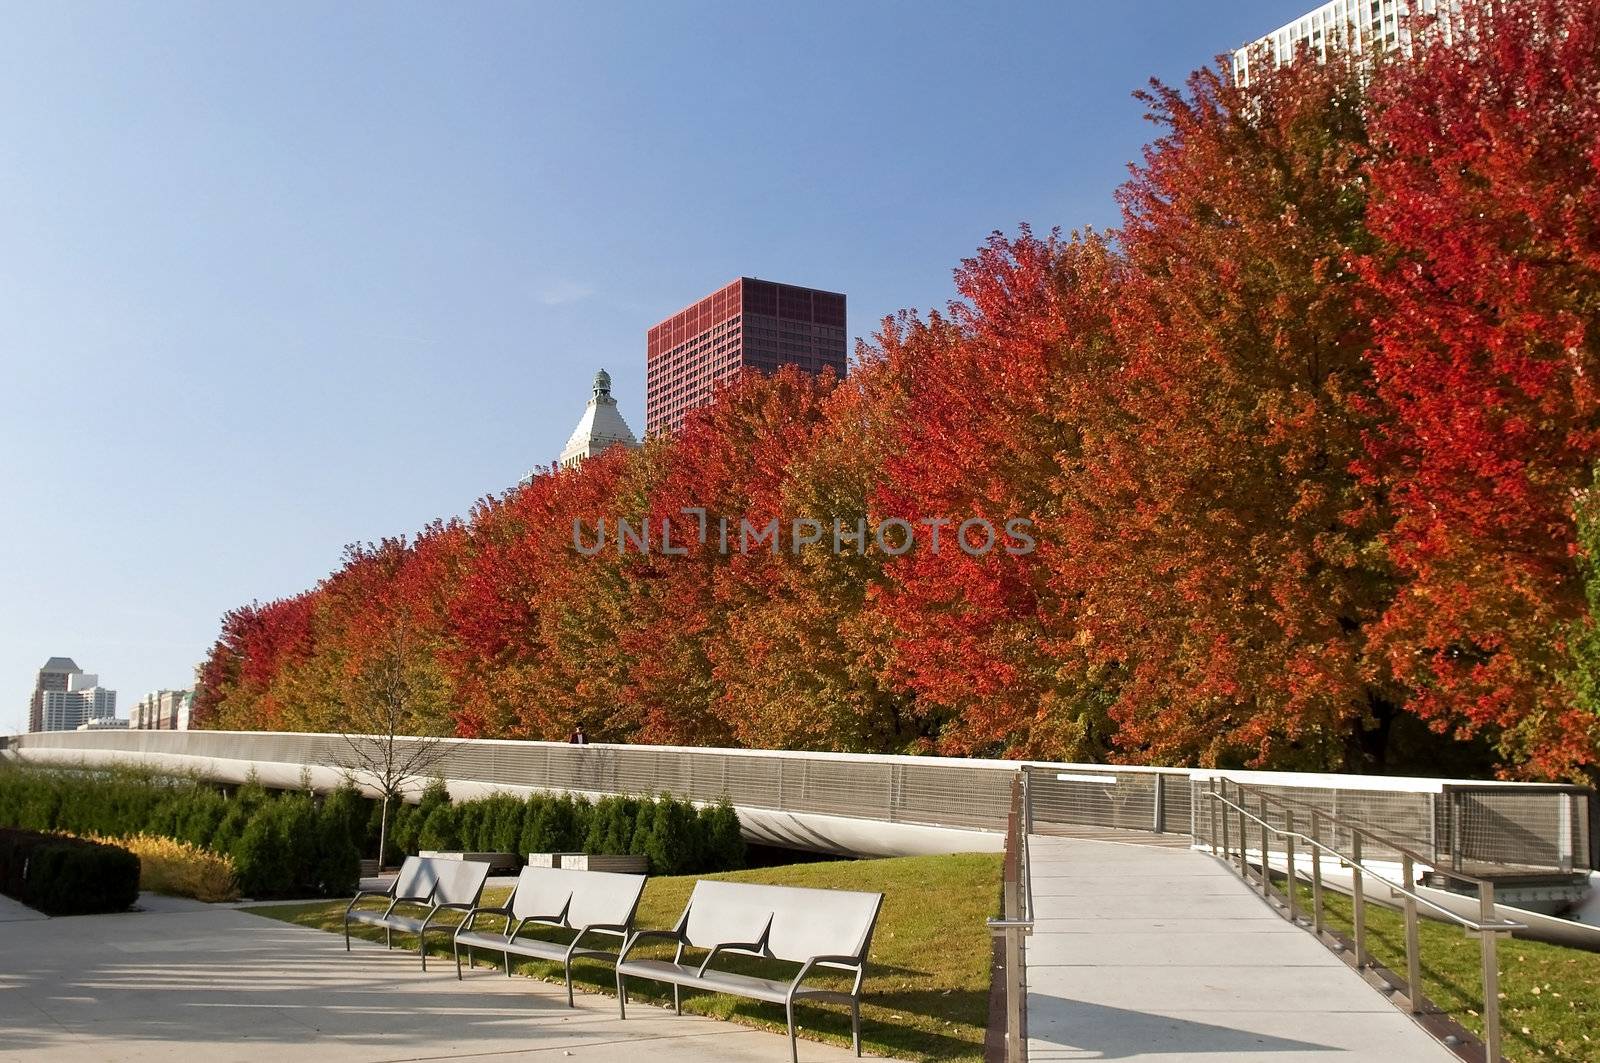 Autumn in Chicago by irisphoto4